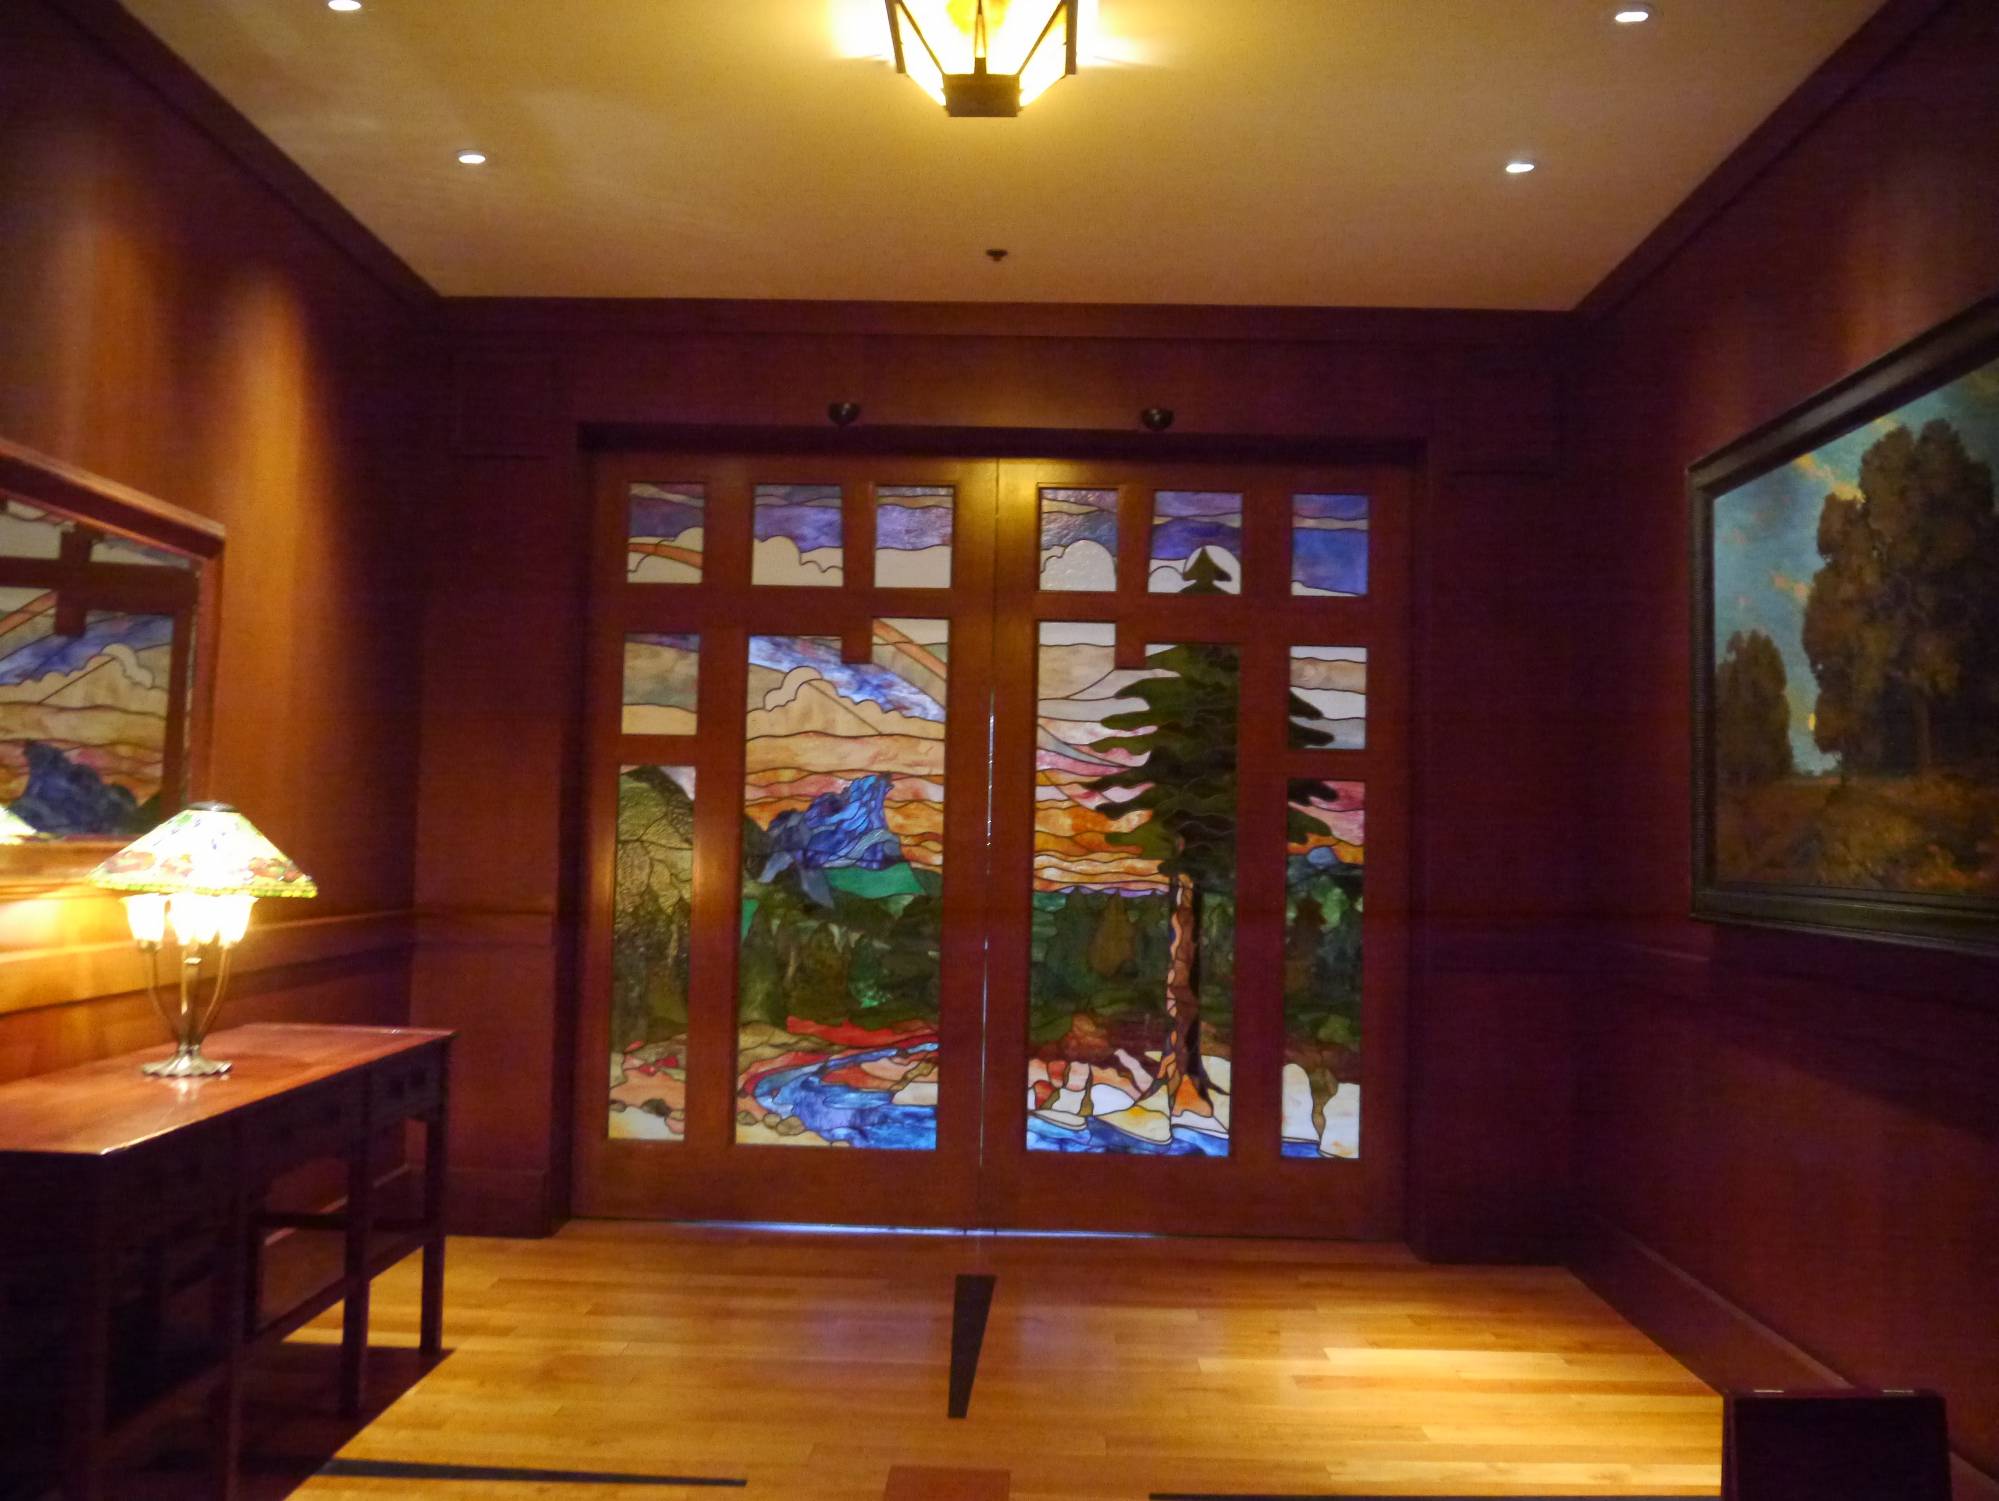 Grand Californian - main entrance doors